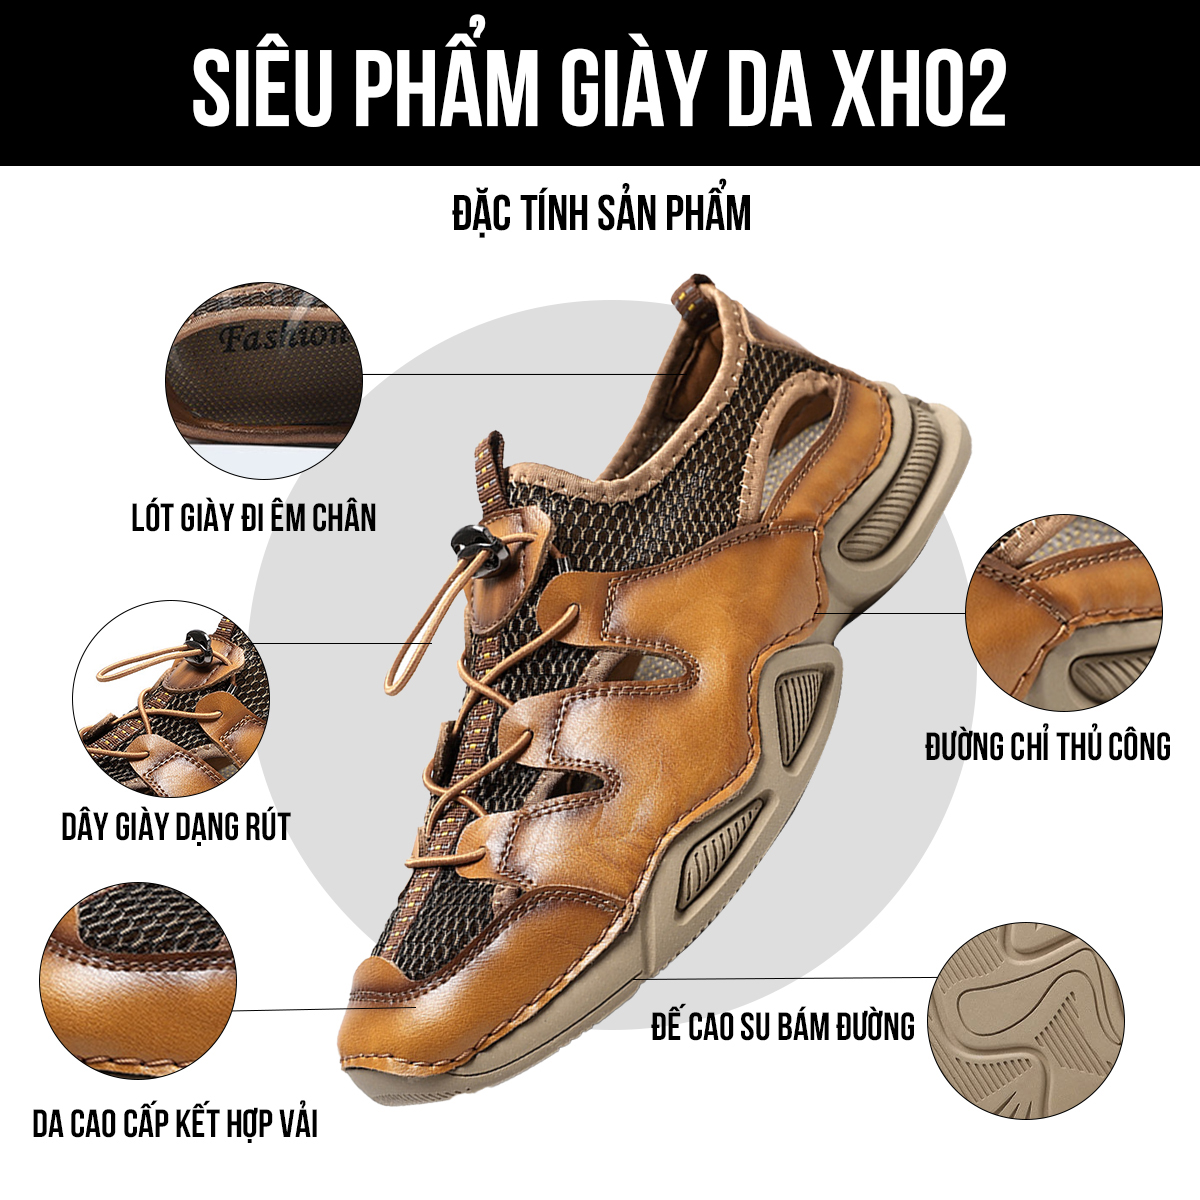 Giày sandal nam XH02 đặc tính sản phẩm